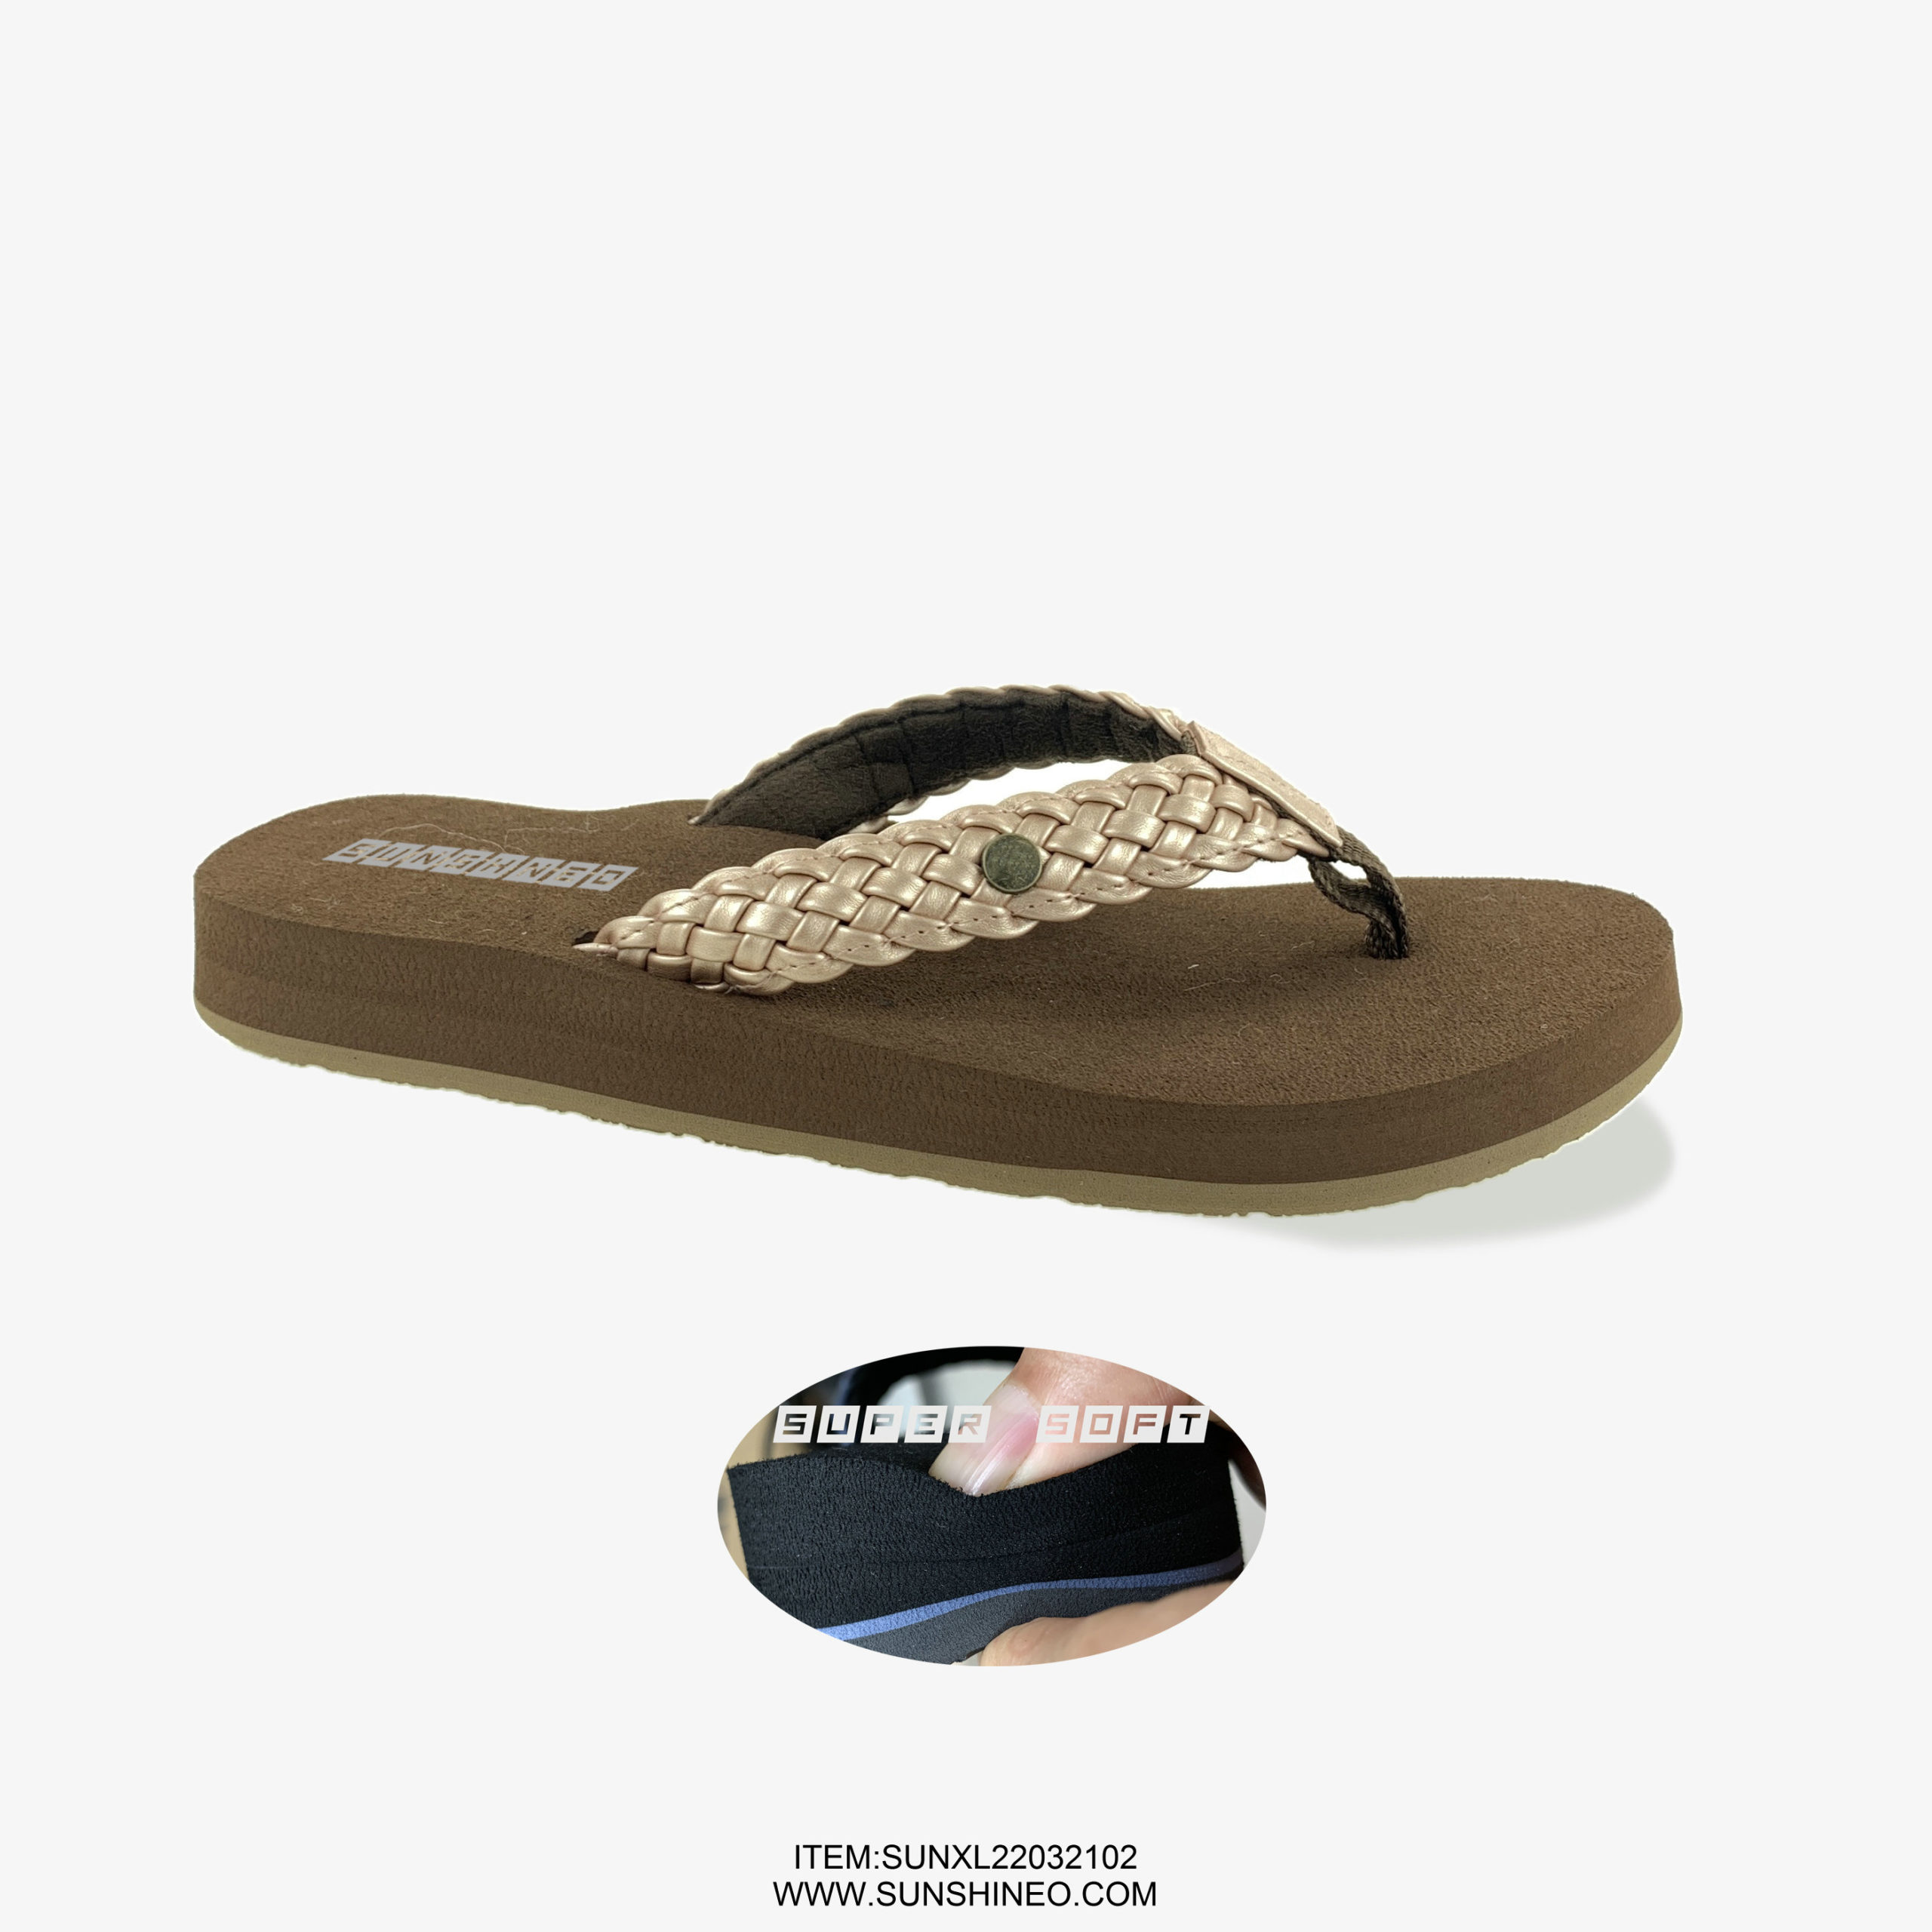 SUNXL22032102 flip flop sandals